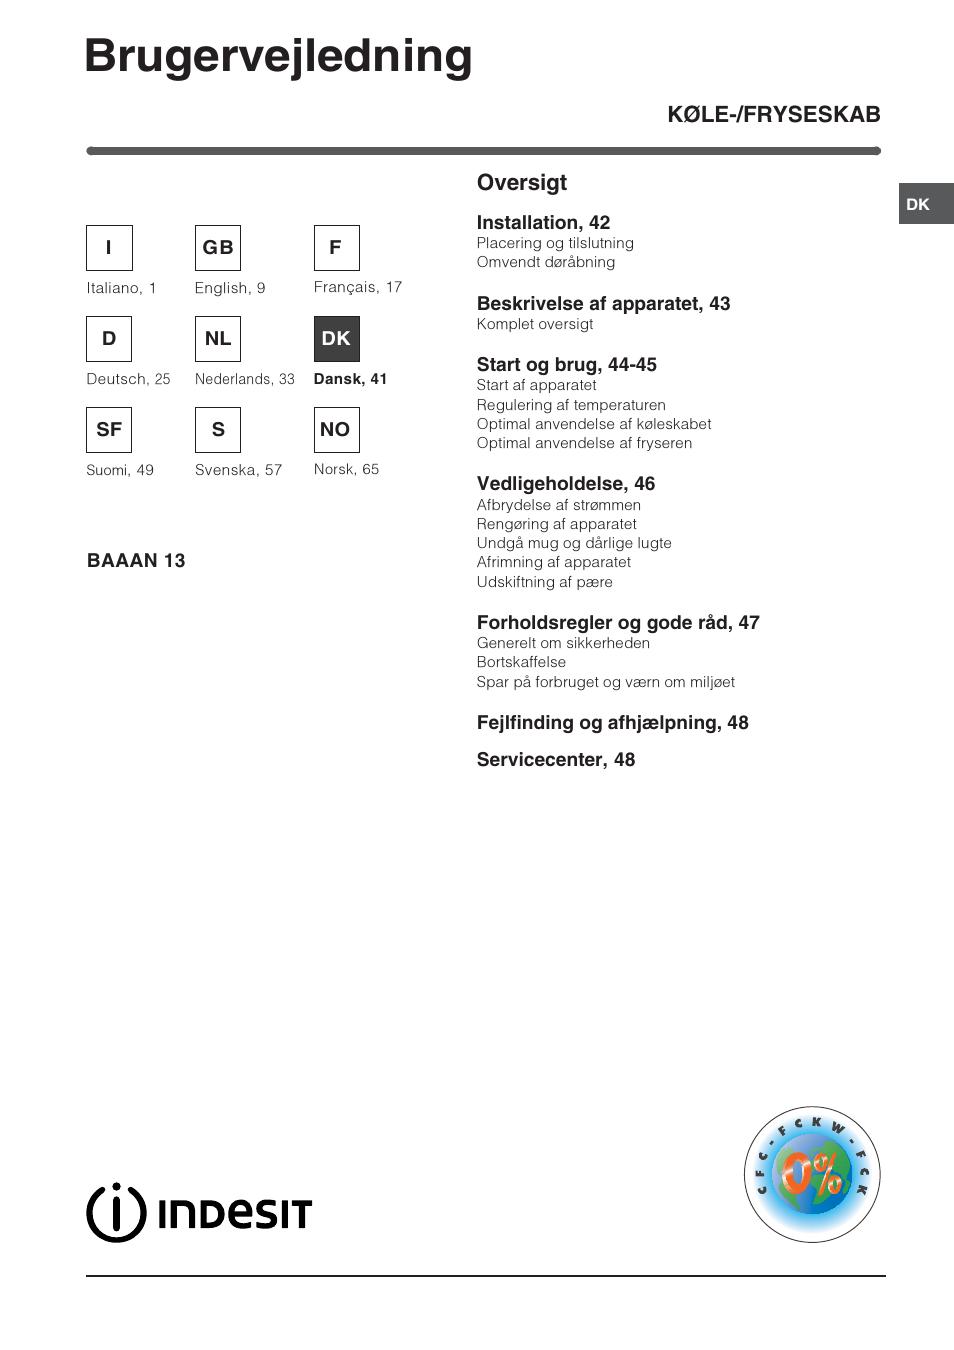 Afstemning Dem parti Brugervejledning, Køle-/fryseskab oversigt | Indesit BAAAN 13 User Manual |  Page 41 / 72